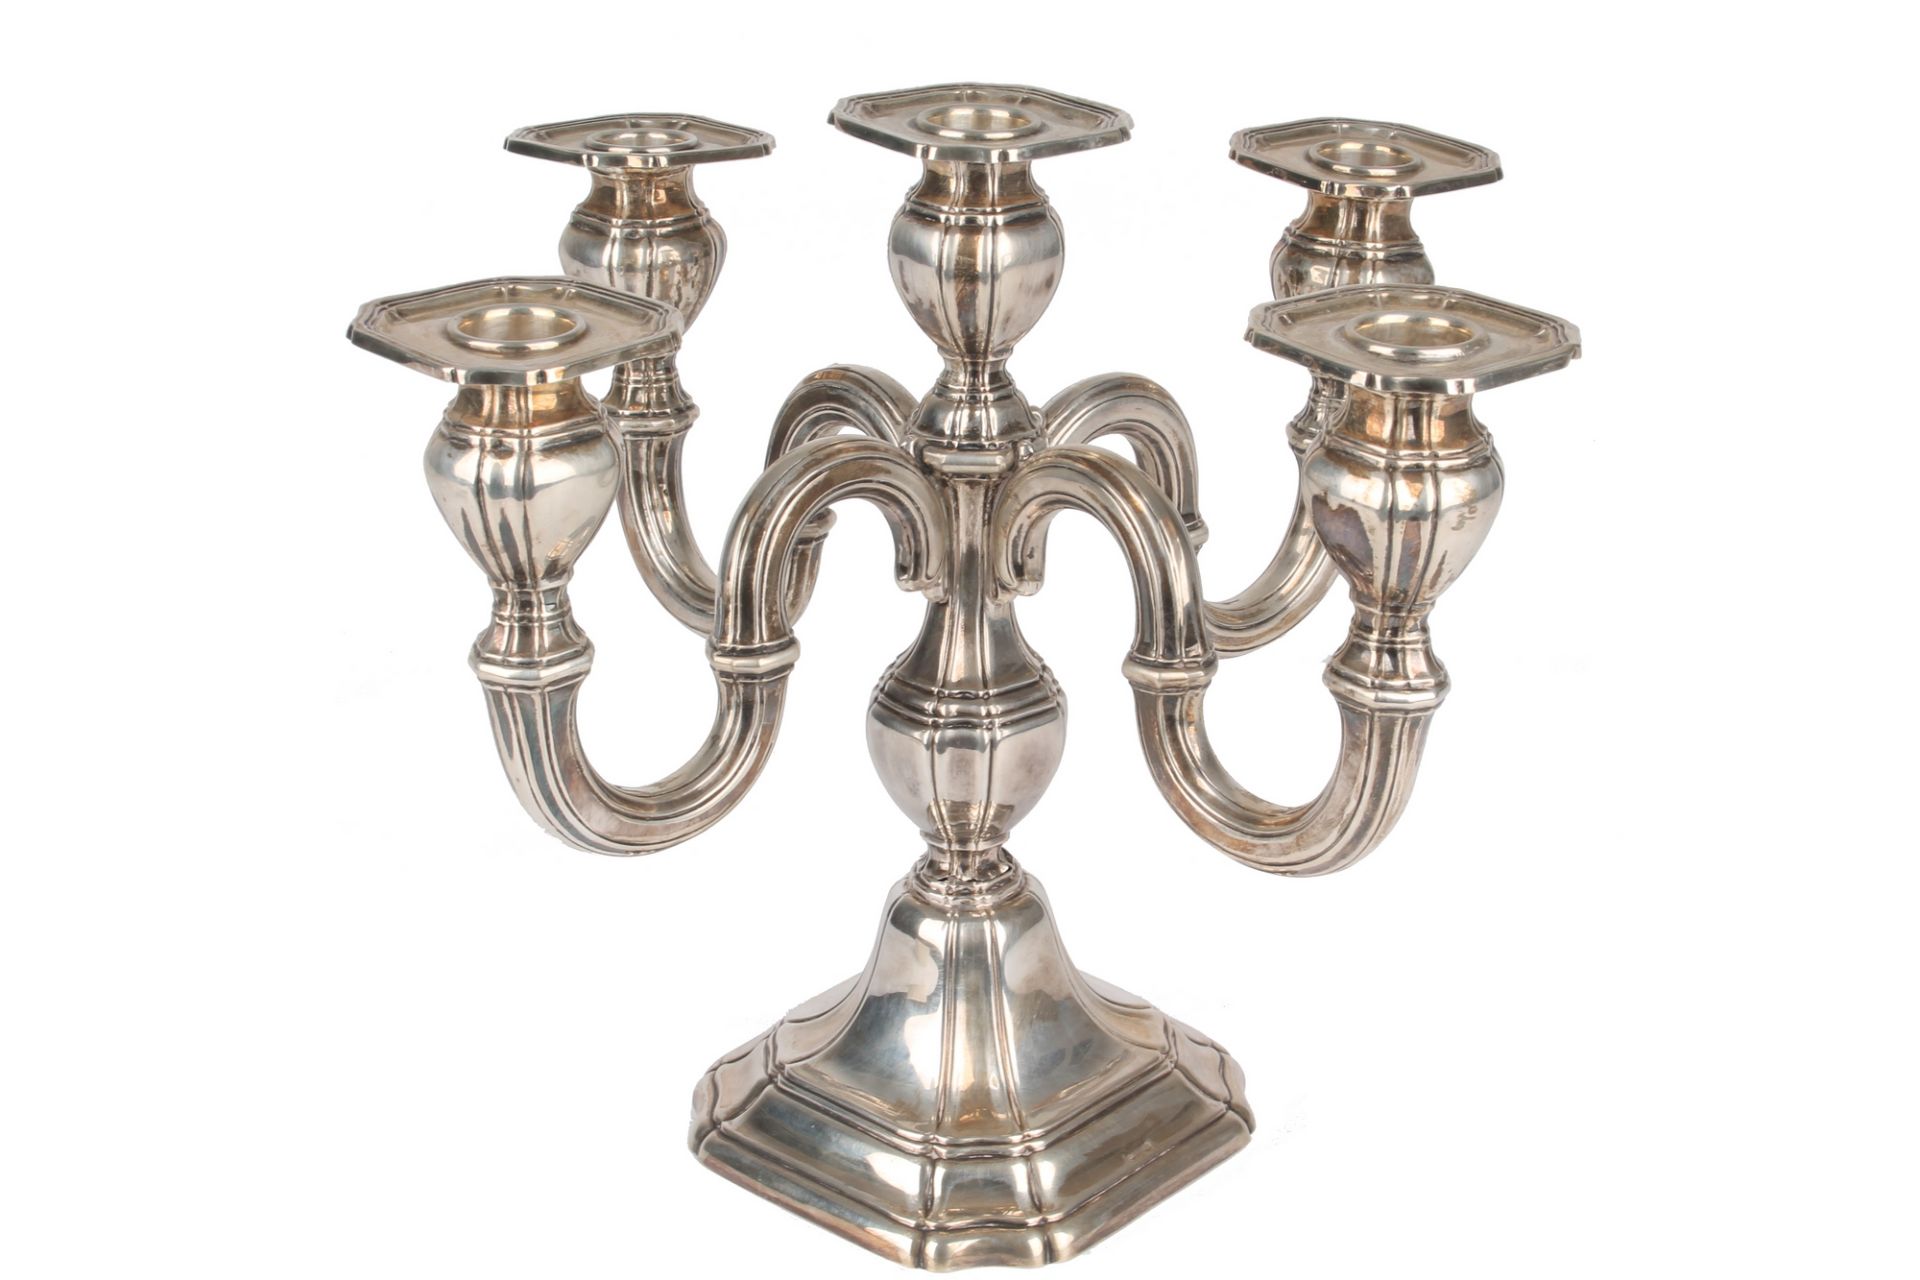 Johann Beck - 800 Silber Kerzenleuchter, silver candlestand,